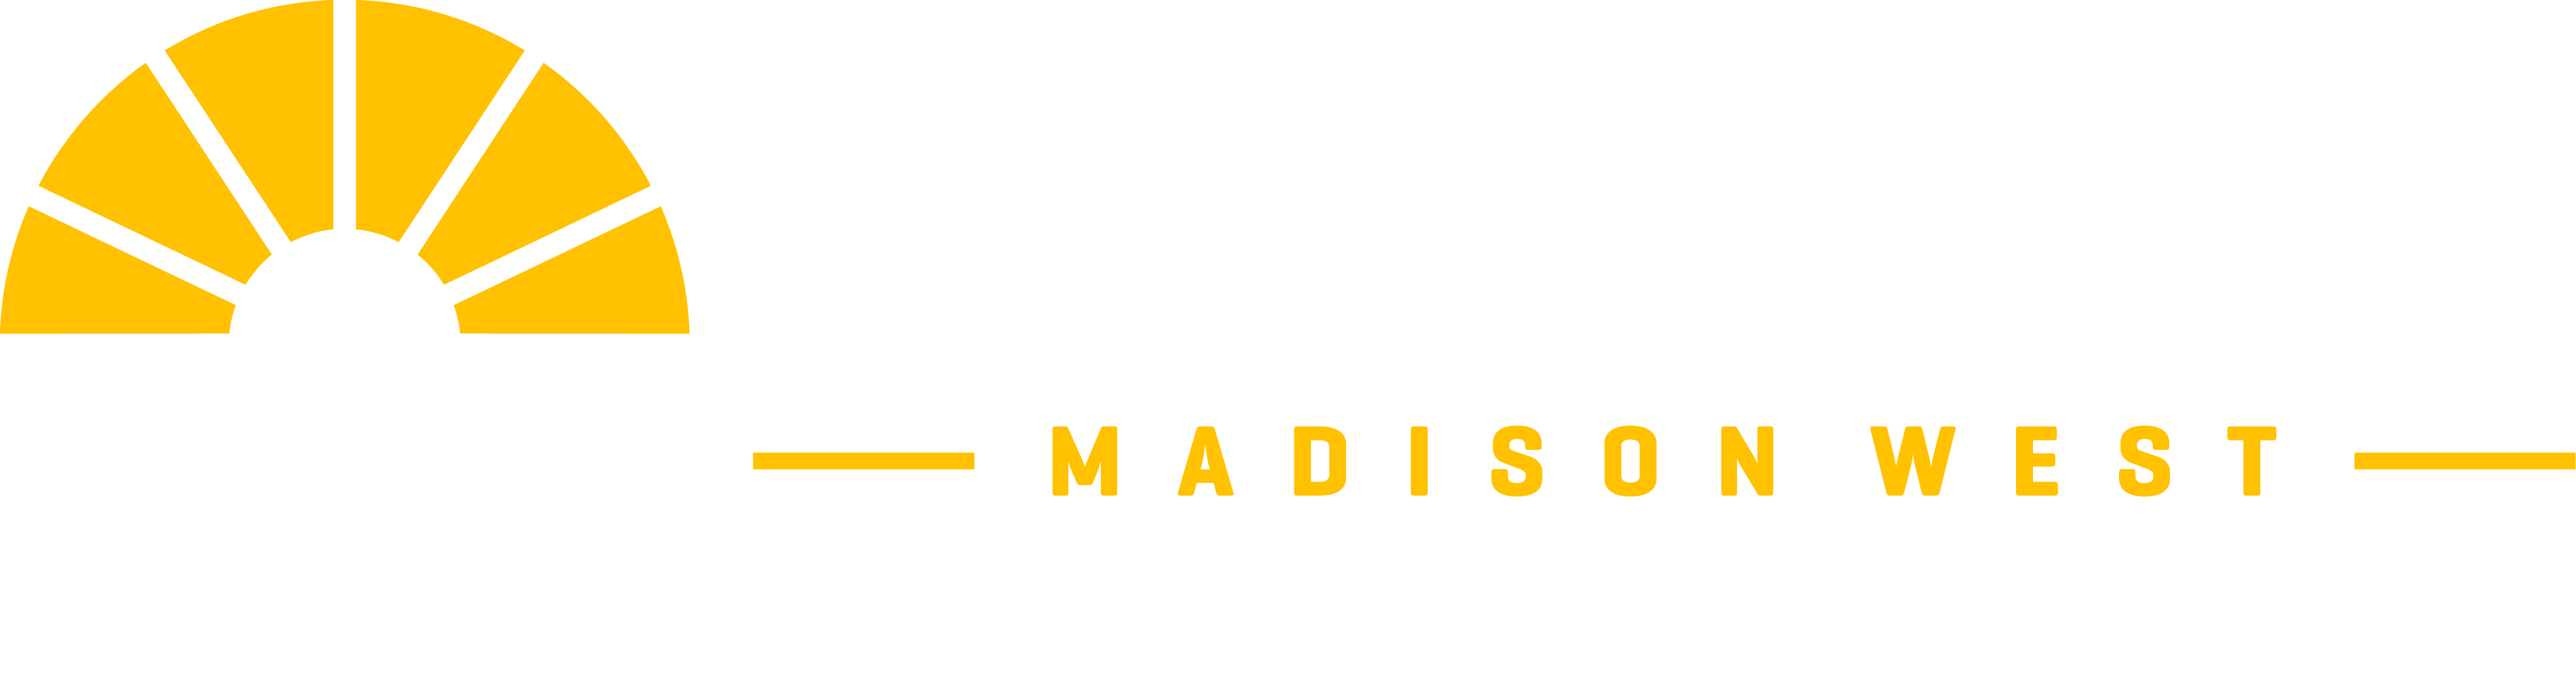 Acton Academy Madison West 21'st Century Learning Logo White